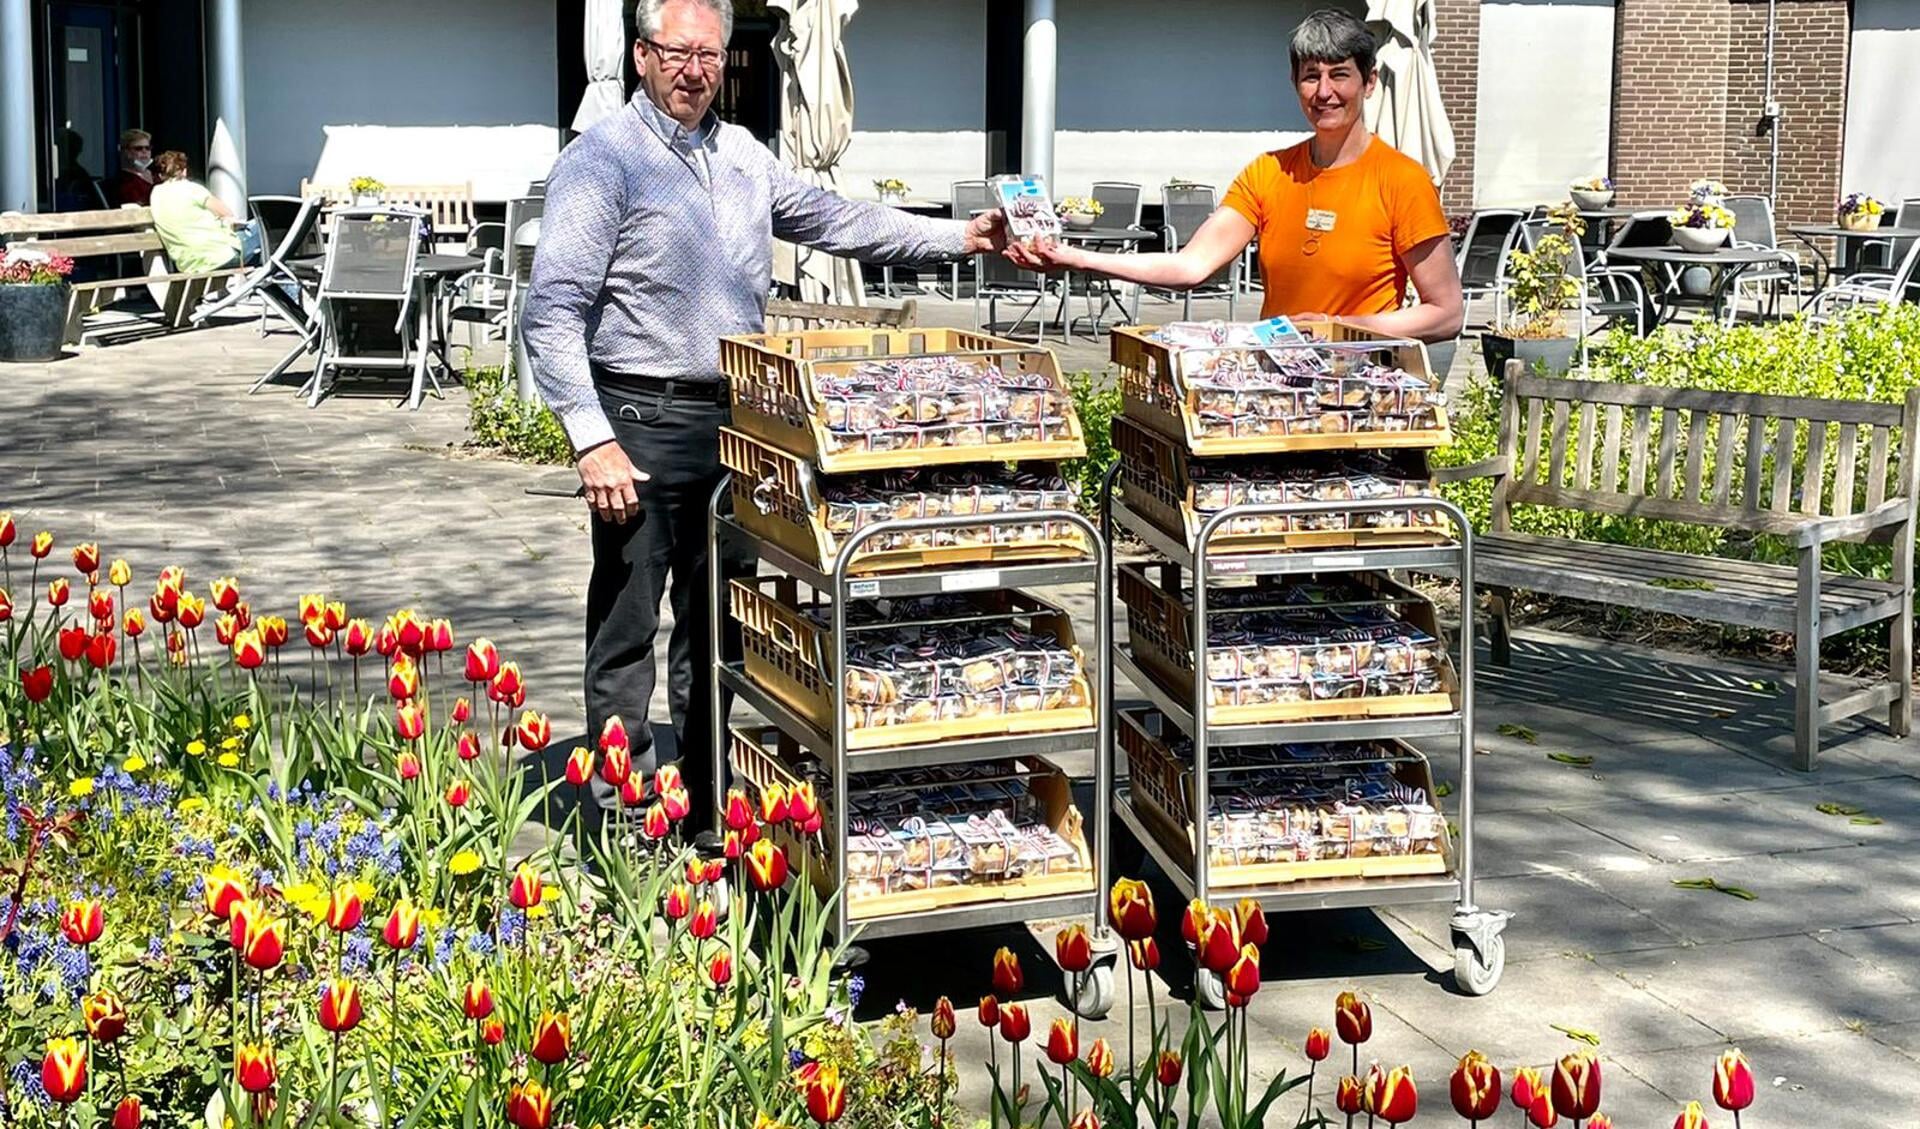 Rotaryclub Monnickendam deelde koekjes uit op Koningsdag aan de medewerkers van Swaensborch. "Een blijk van waardering voor hun inzet."